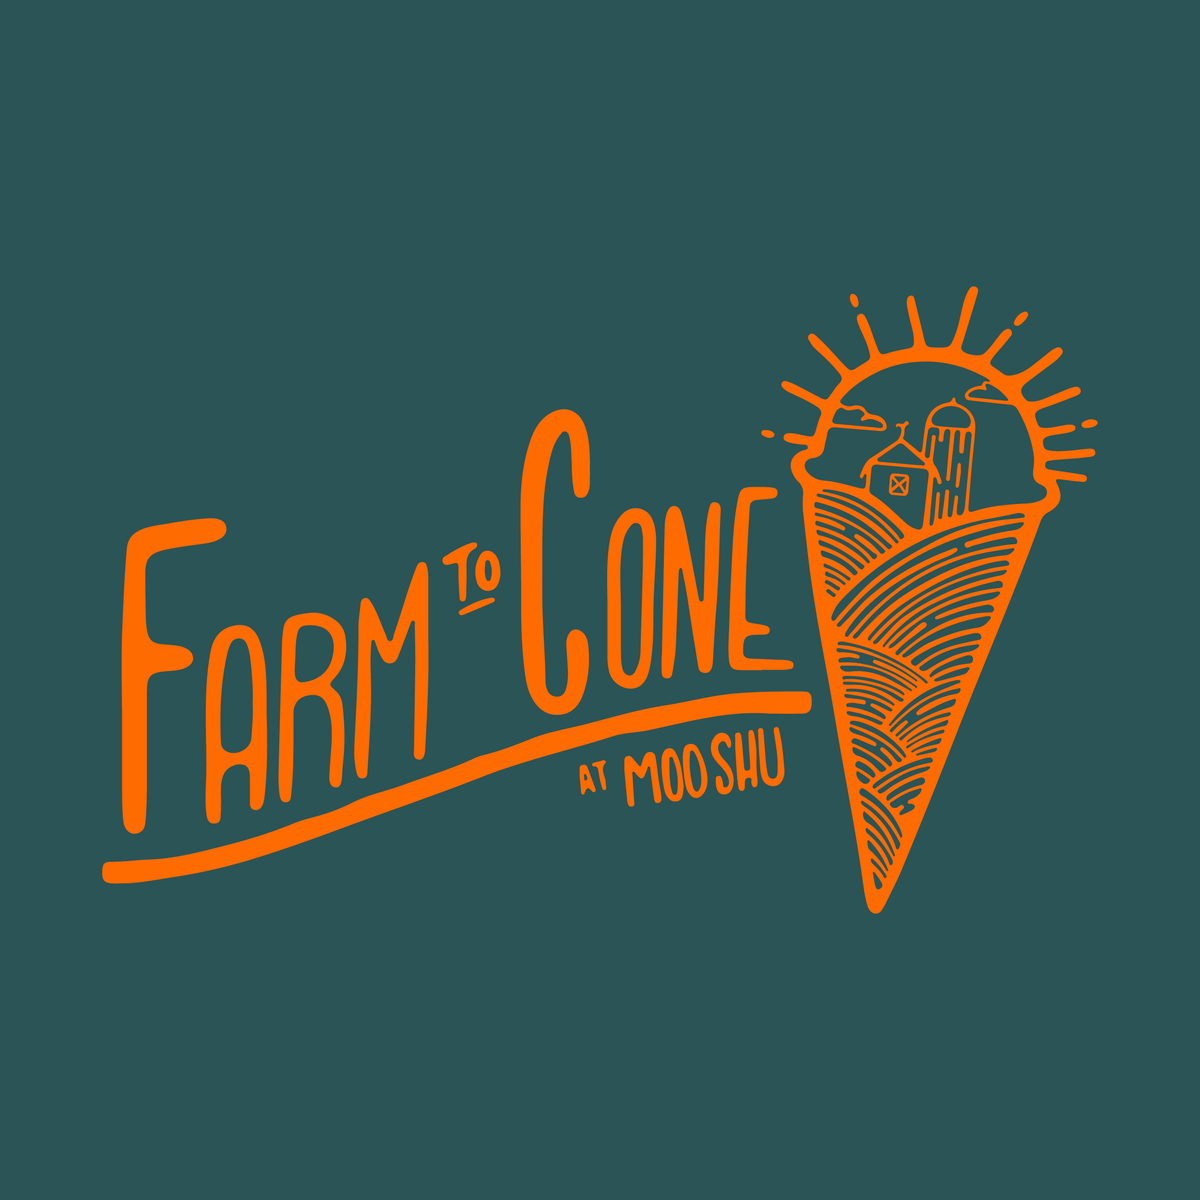 T-Shirt: Farm to Cone